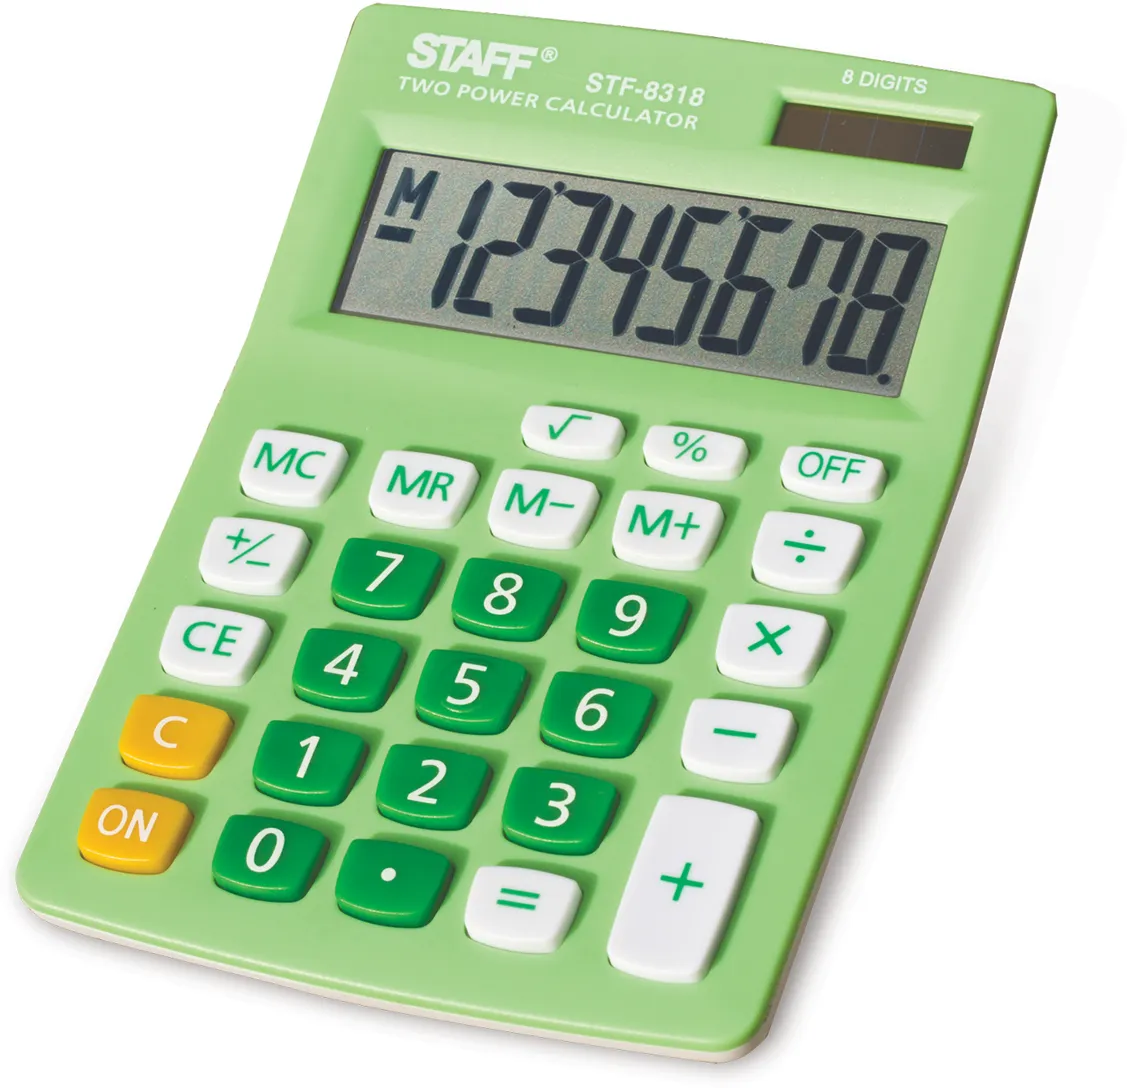 Калькулятор настольный STAFF STF-8318, 8-разрядный, однострочный экран, зеленый (STF-8318)